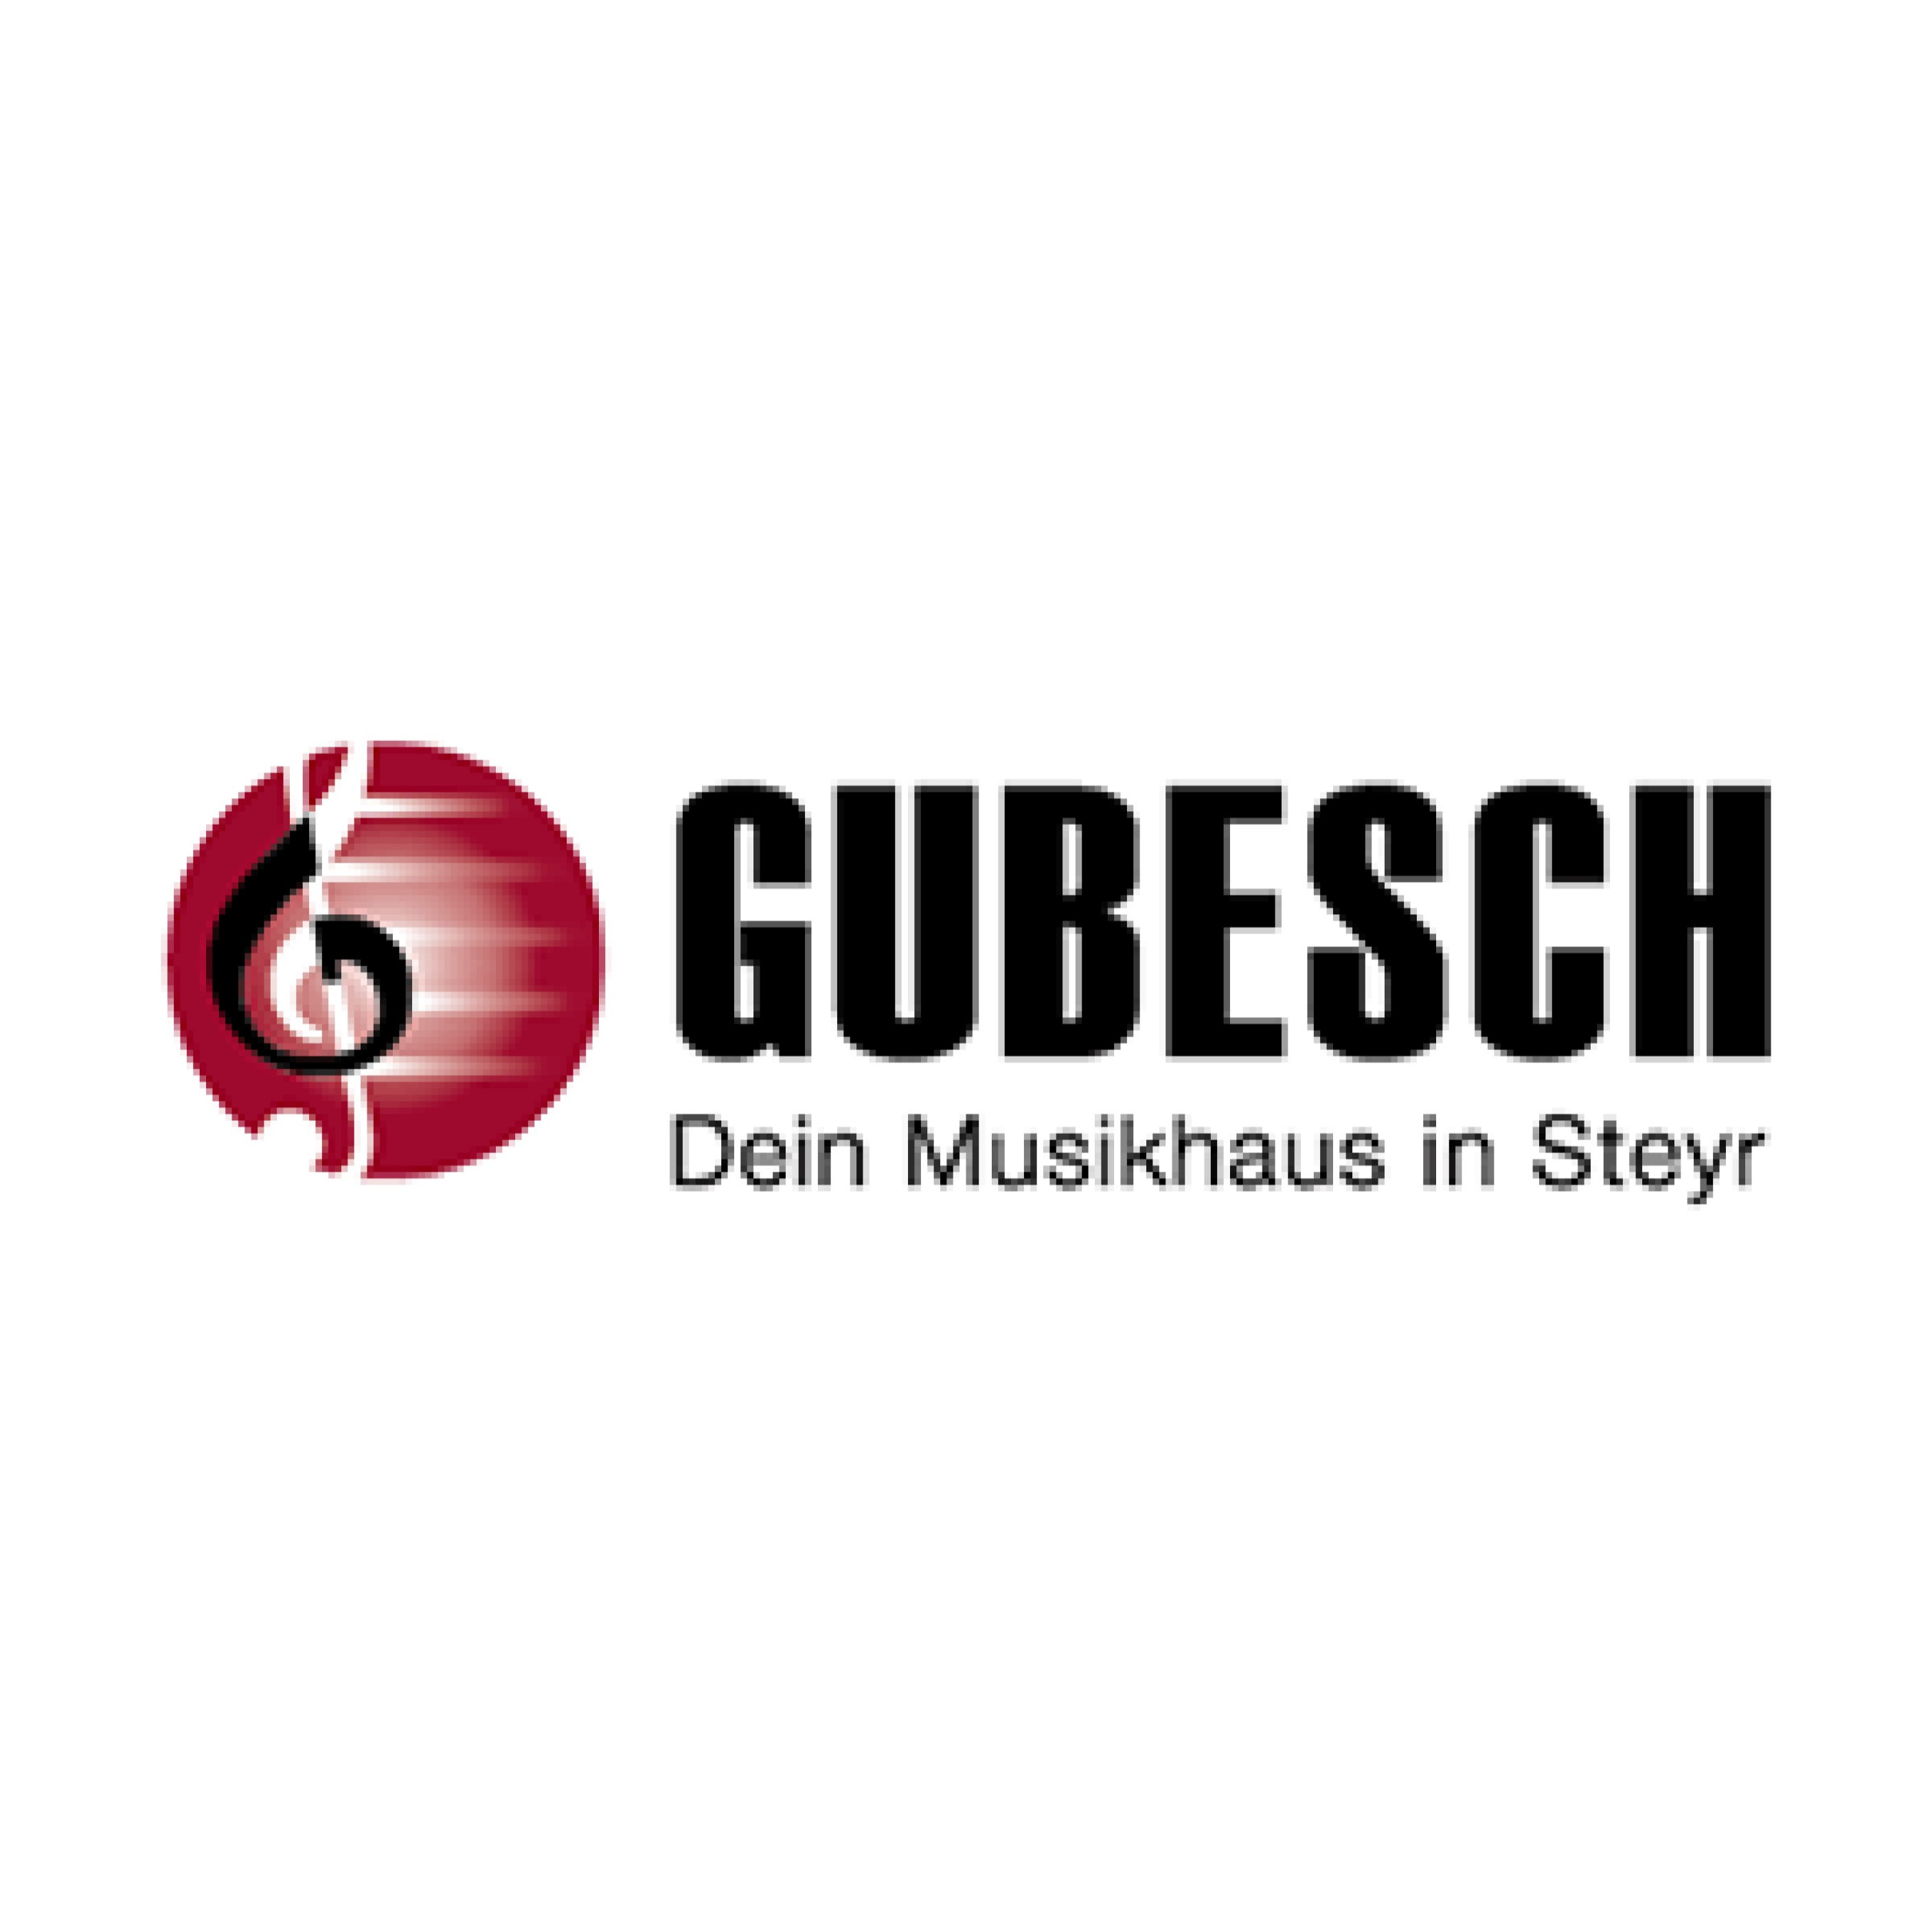 Musikhaus Gubesch - Dein Musikhaus in Steyr - Logo